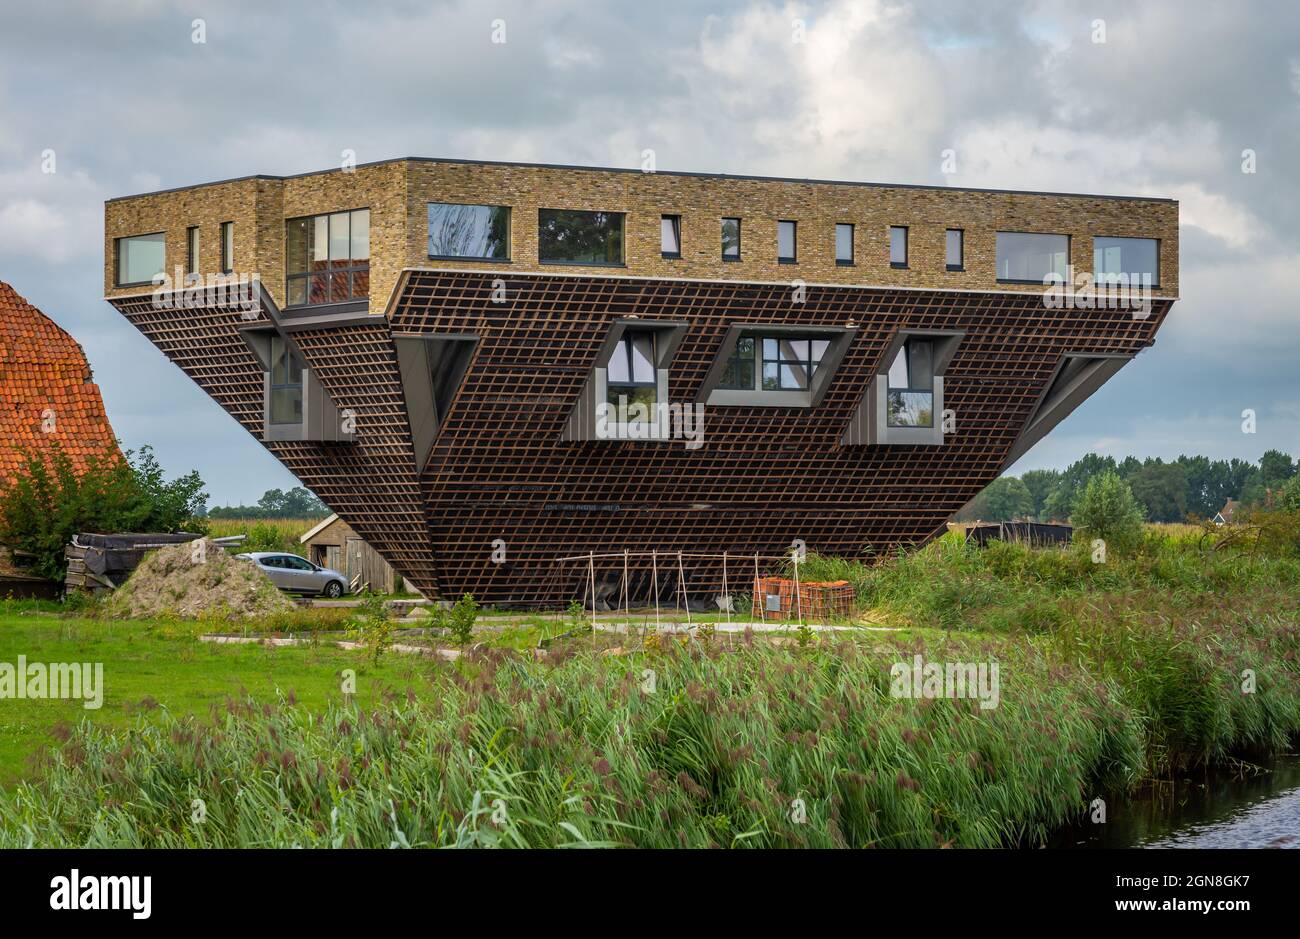 Maison à l'envers dans la campagne hollandaise dans la ville de Hindeloopen, un exemple d'architecture inhabituelle et expérimentale Banque D'Images